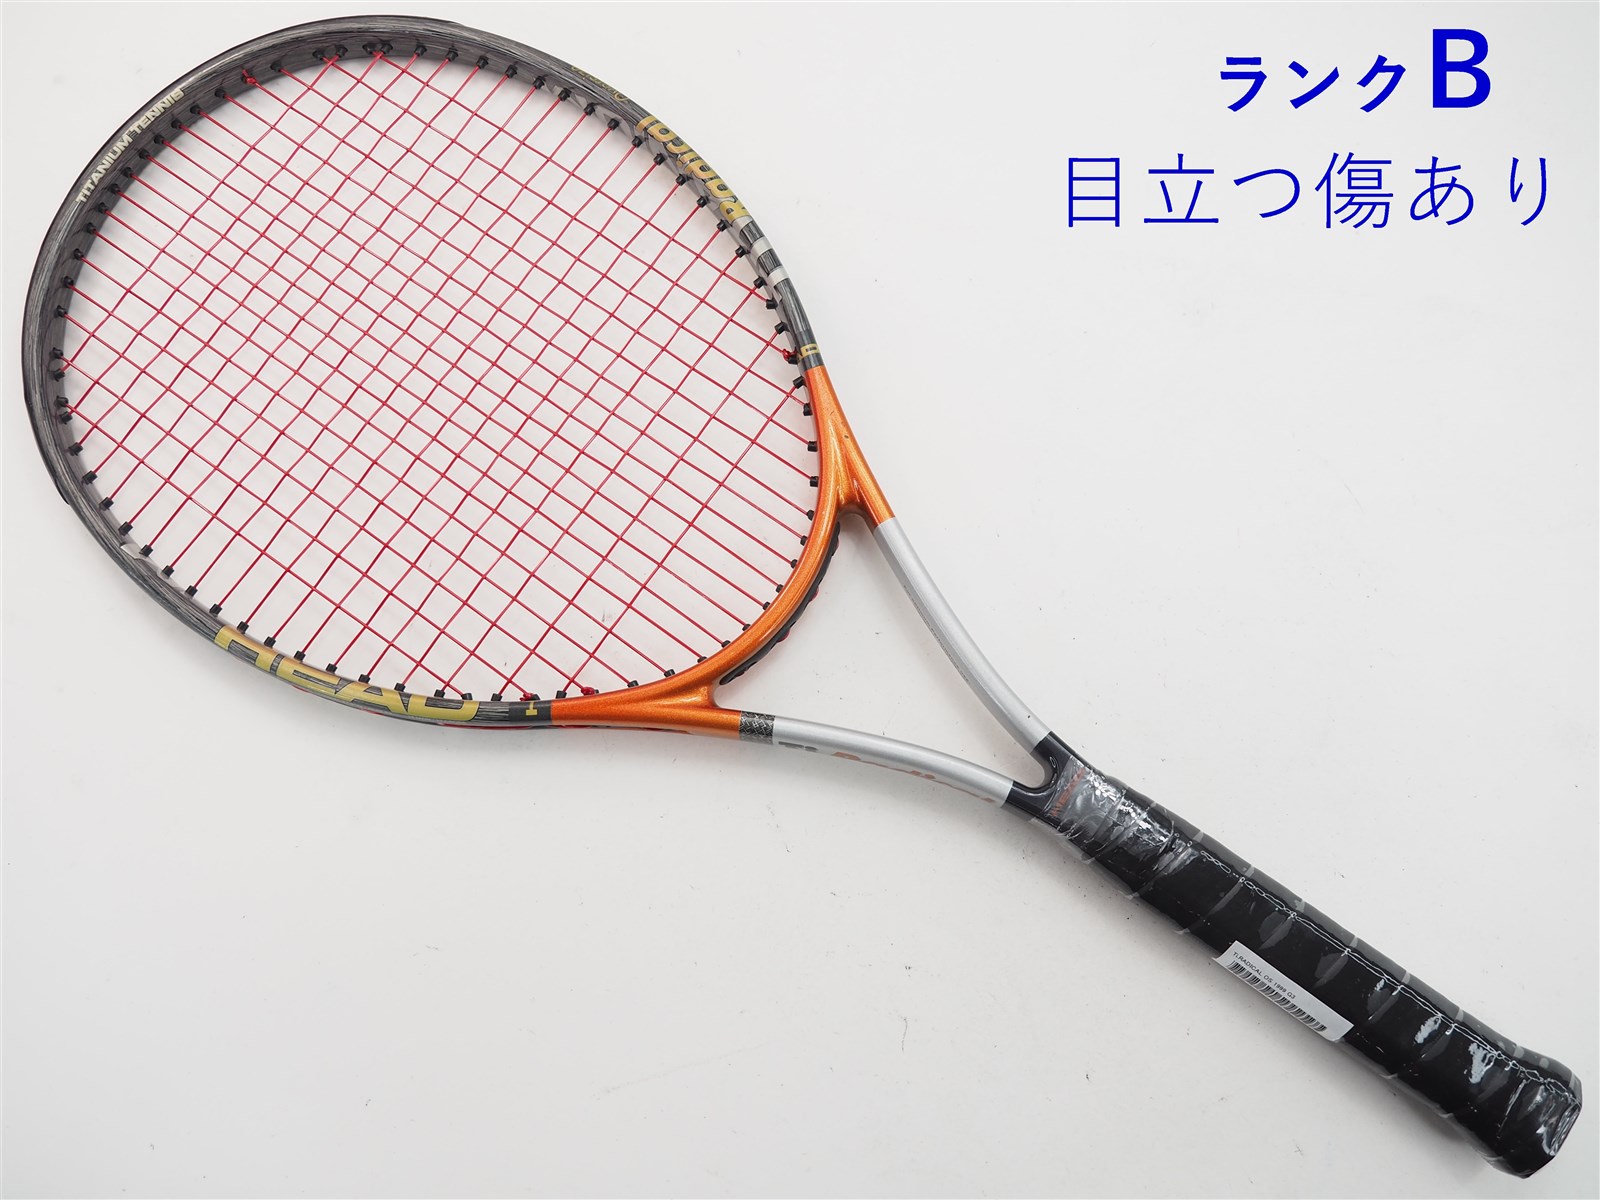 テニスラケット ヘッド アイ ラジカル OS 2001年モデル (G2)HEAD i.RADICAL OS 2001270インチフレーム厚